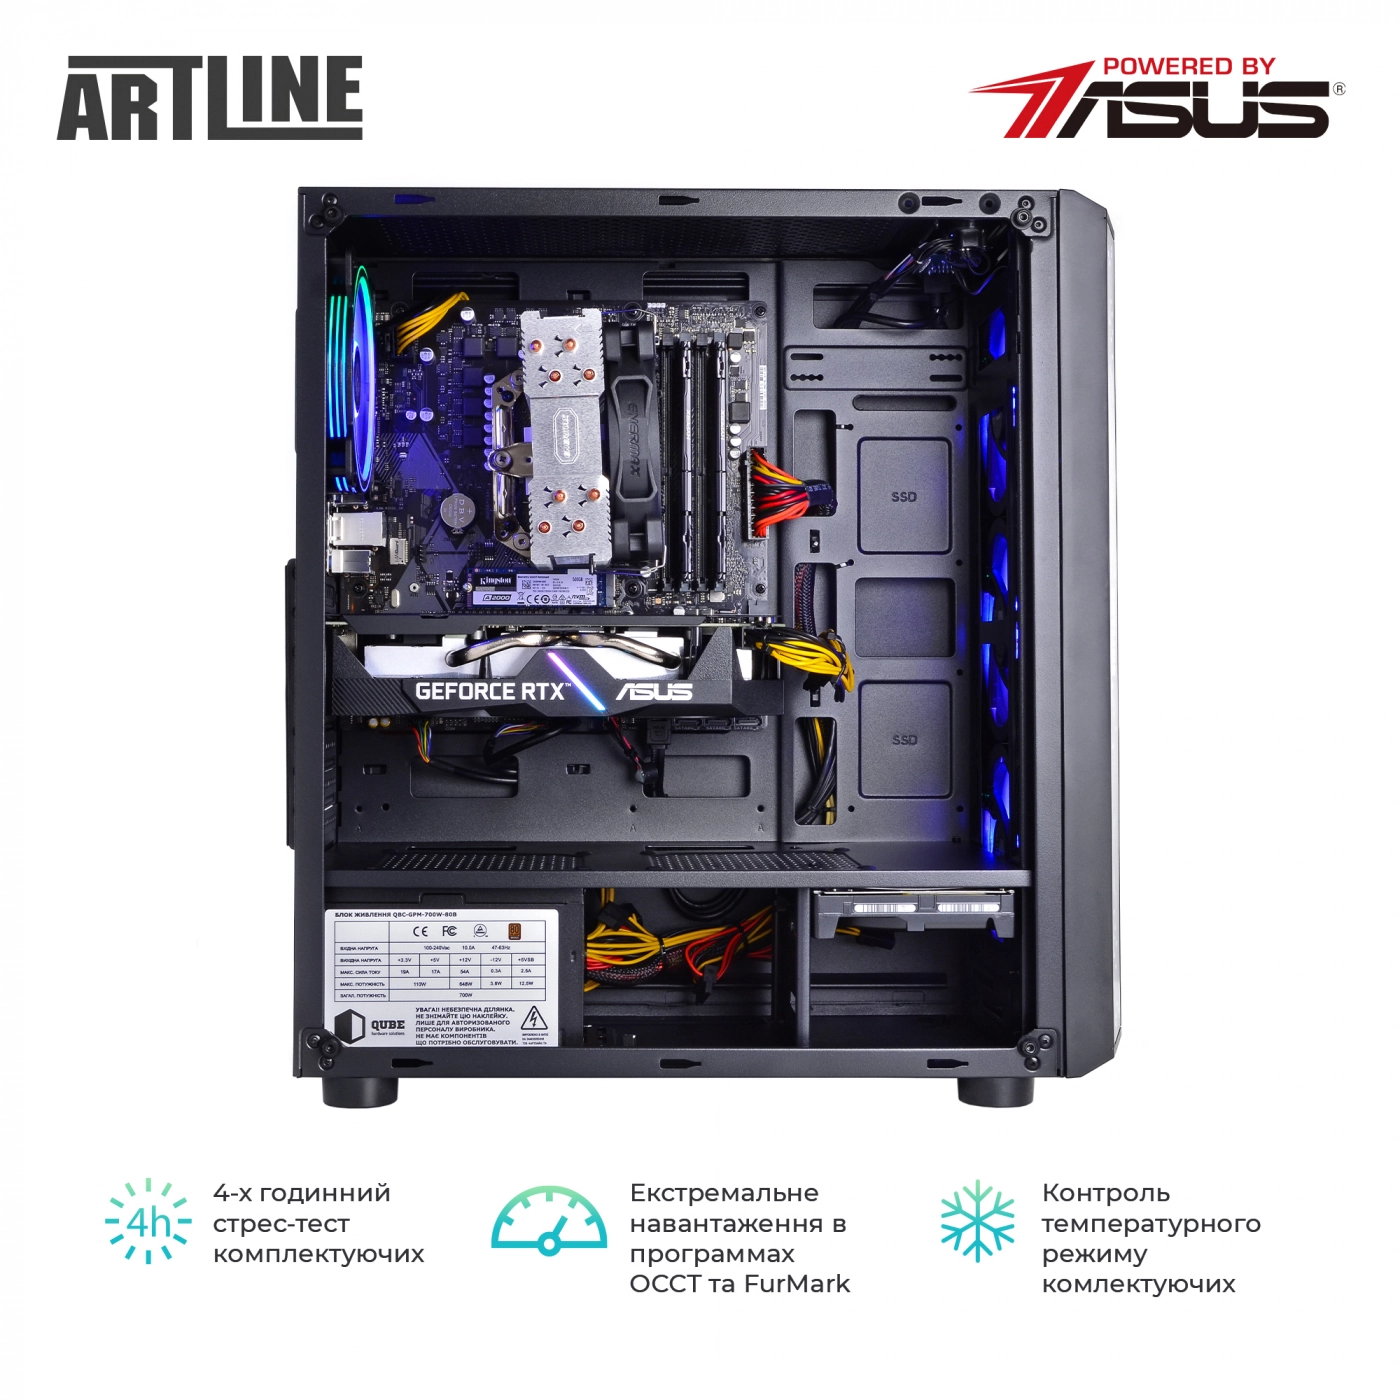 Купить Компьютер ARTLINE Gaming X68v15 - фото 9